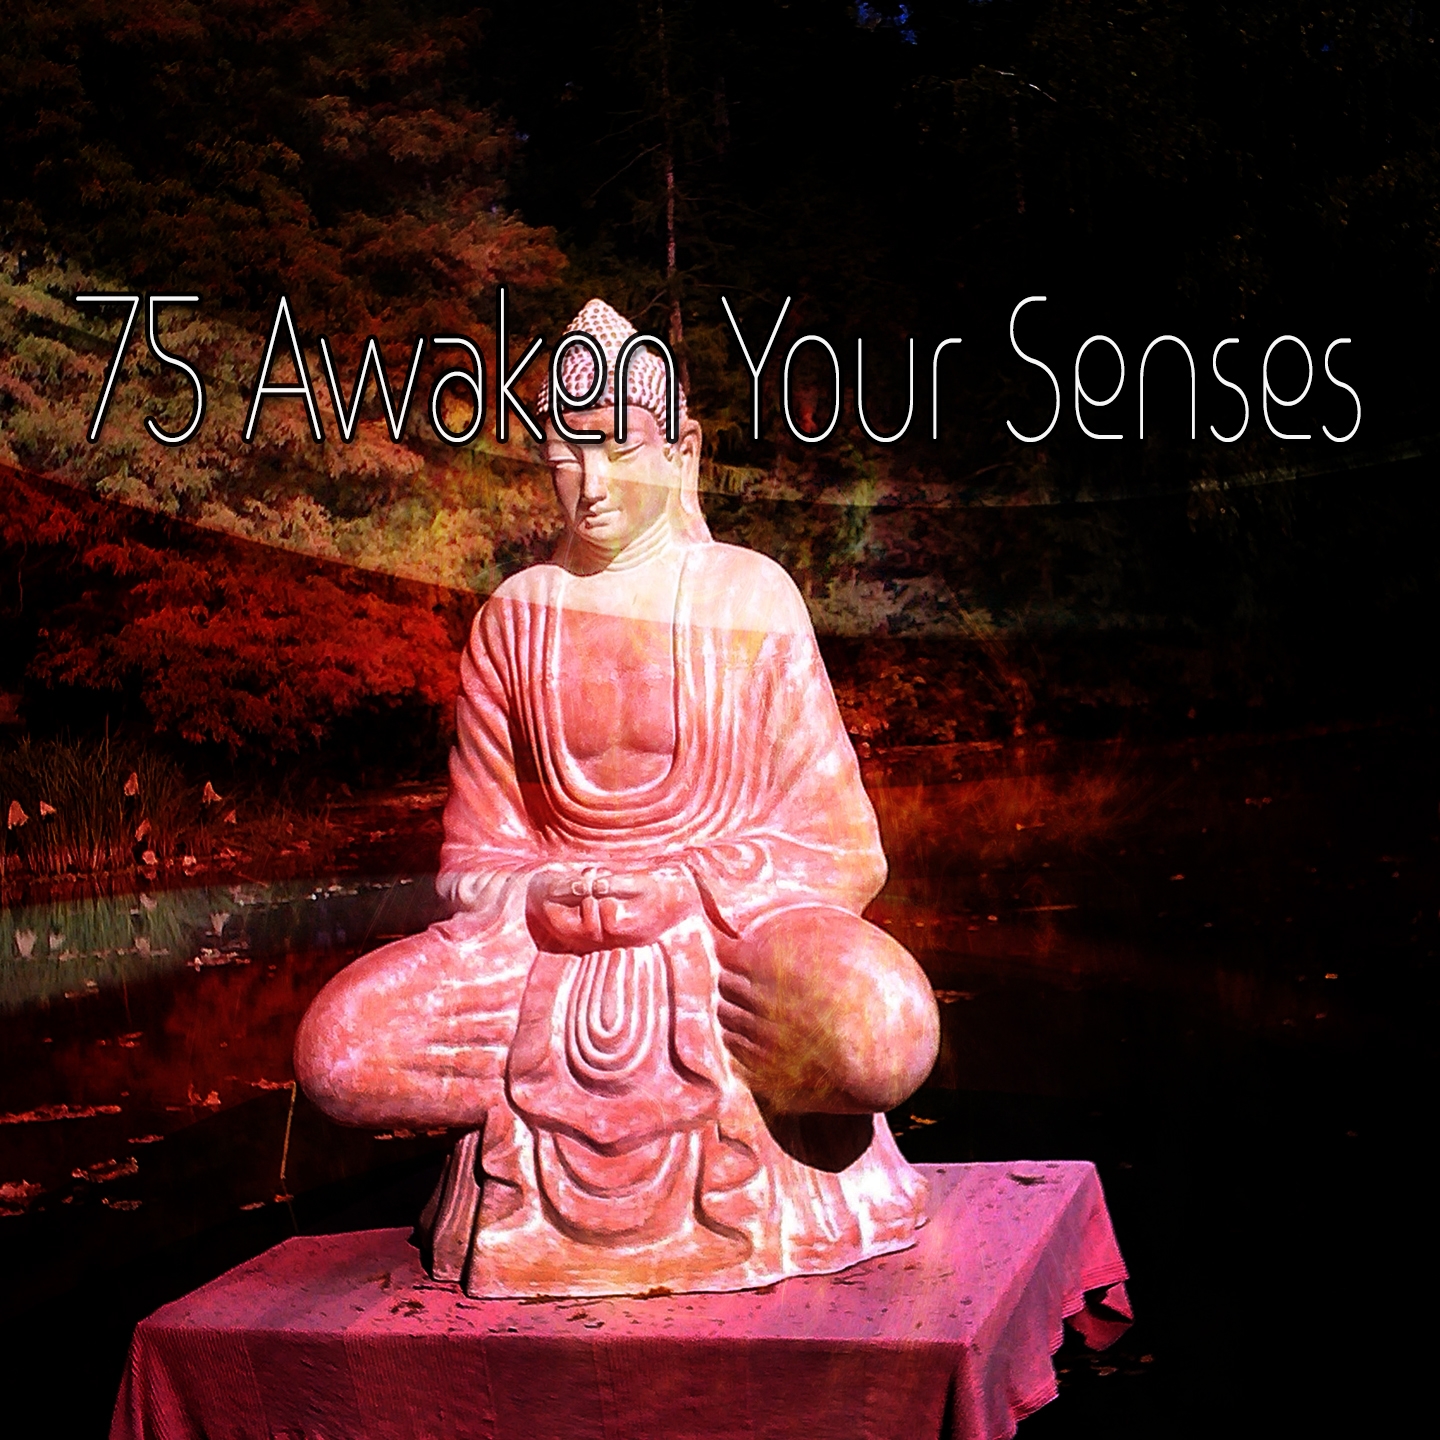 75 Awaken Your Senses